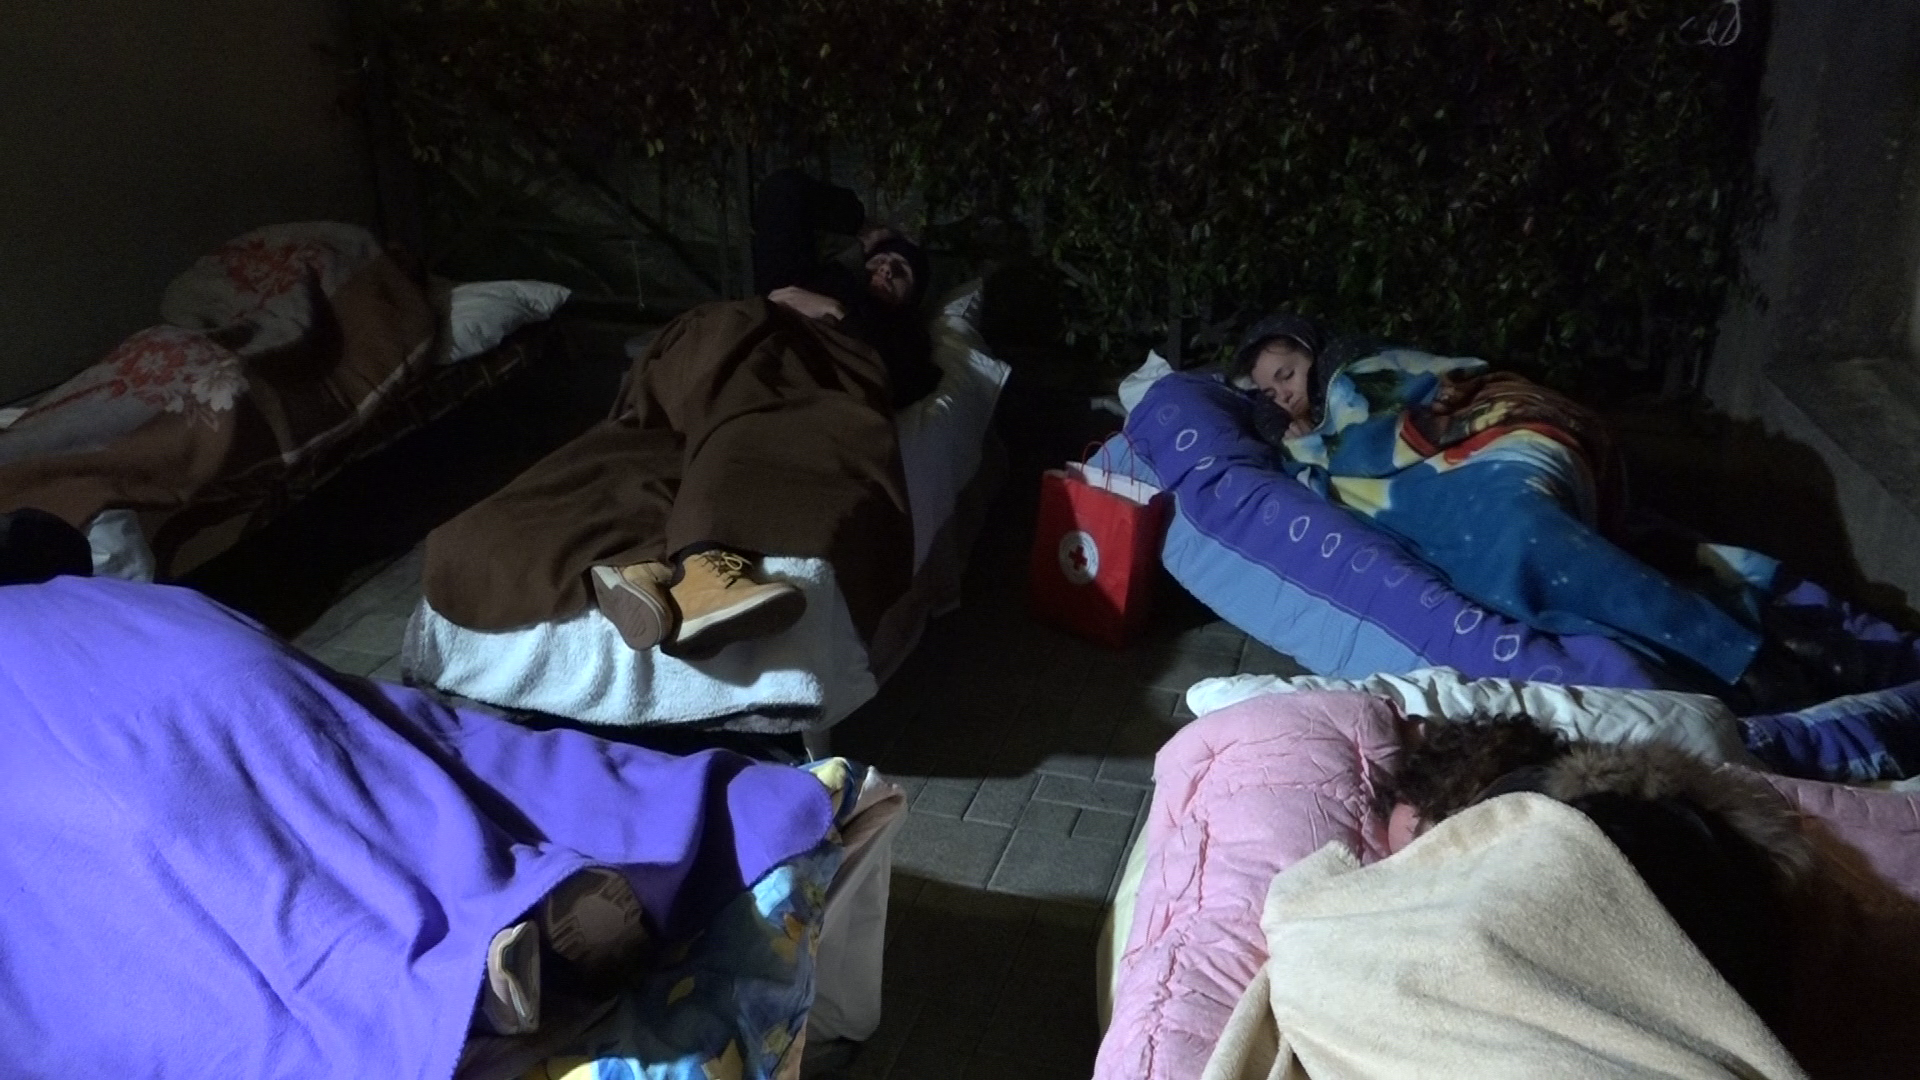 Noć pod zvijezdama:Spavanje na otvorenom u znak solidarnosti s beskućnicima